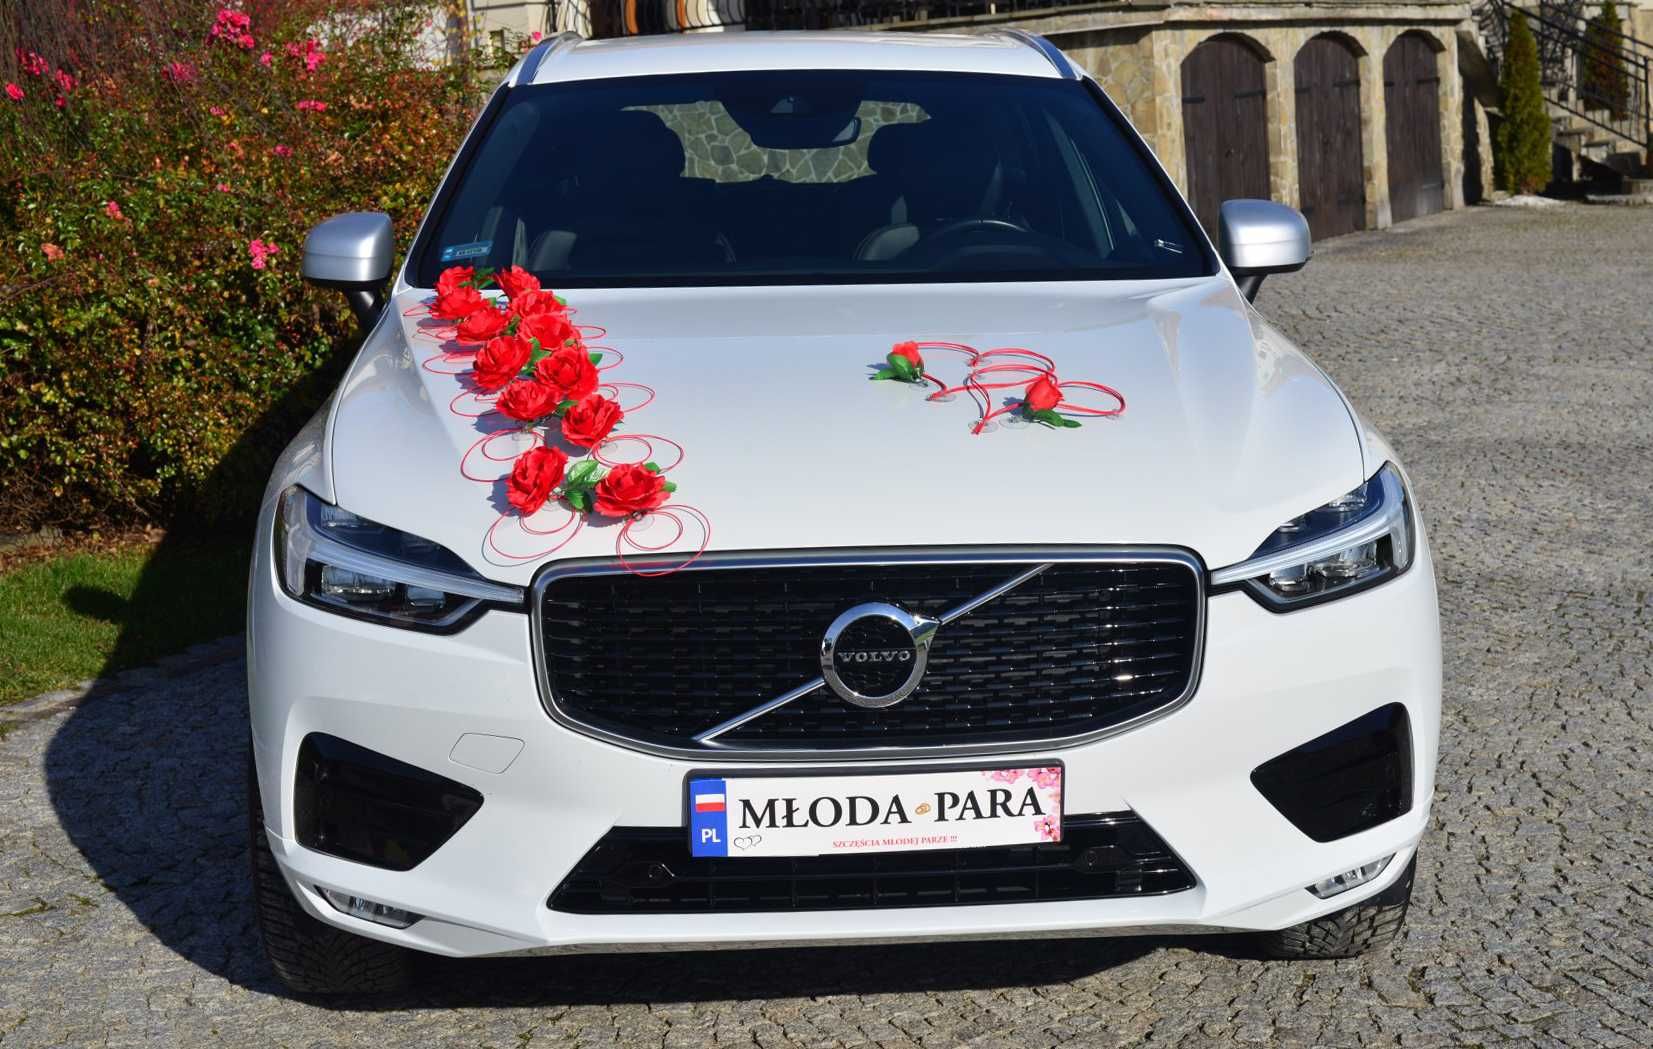 Piękna czerwona ozdoba dekoracja na auto do ślubu.POLECAMY 320